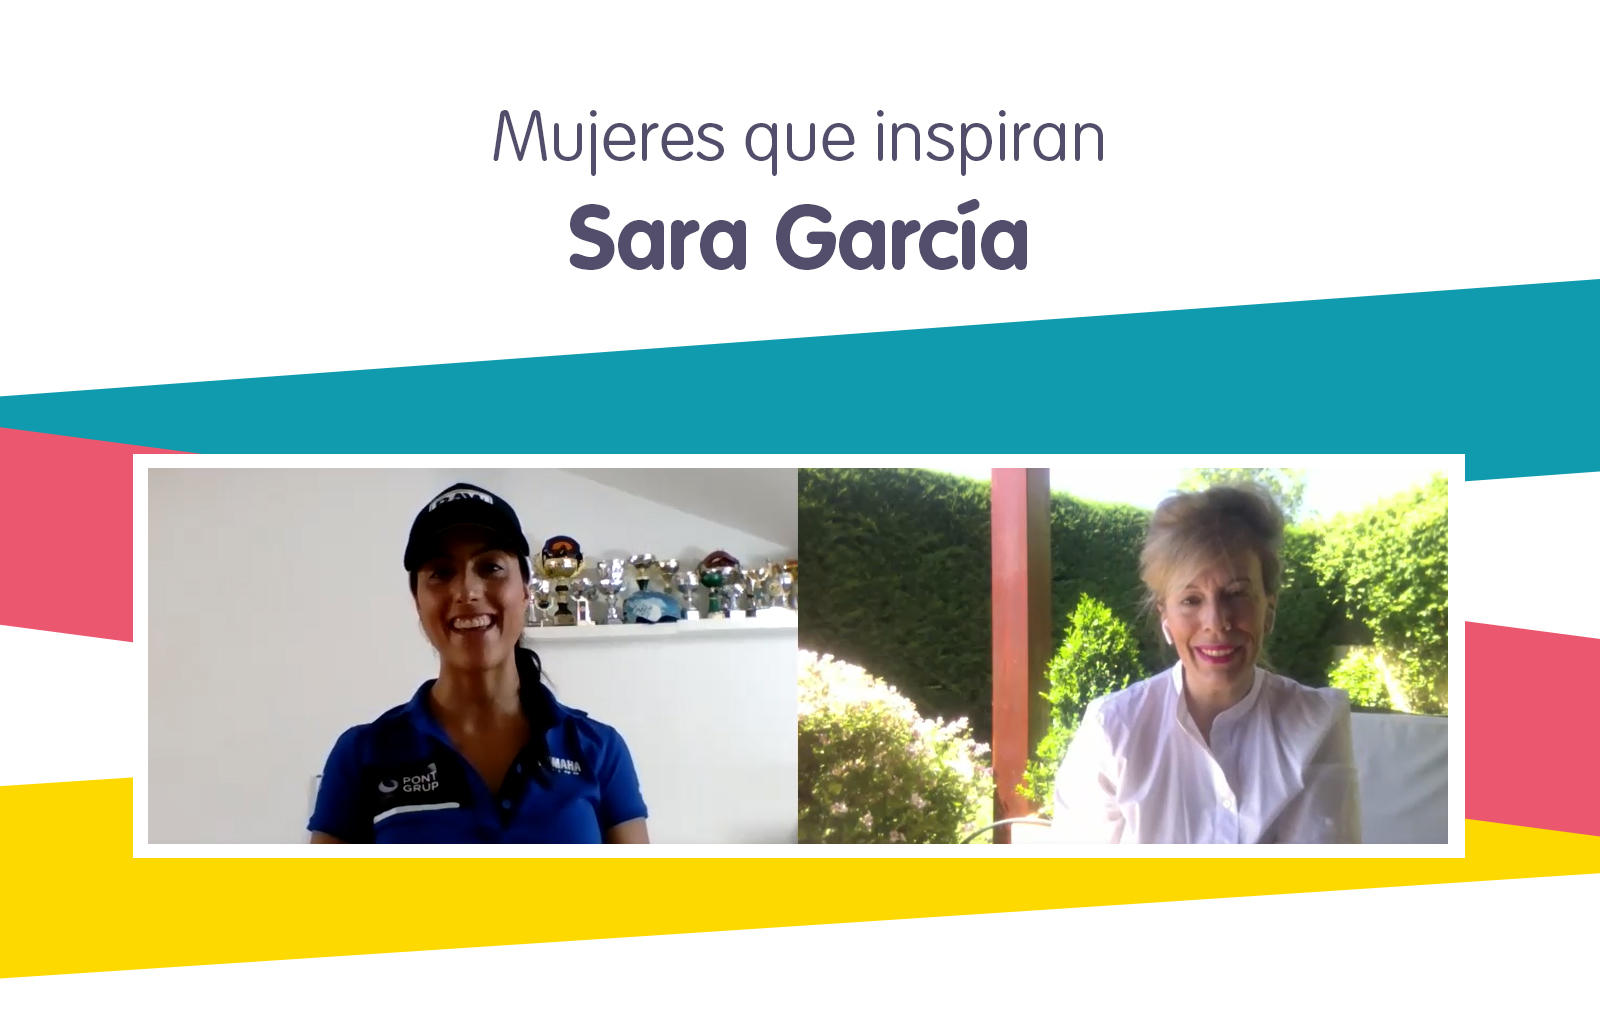 MUJERES QUE INSPIRAN – Sara García, Piloto de moto